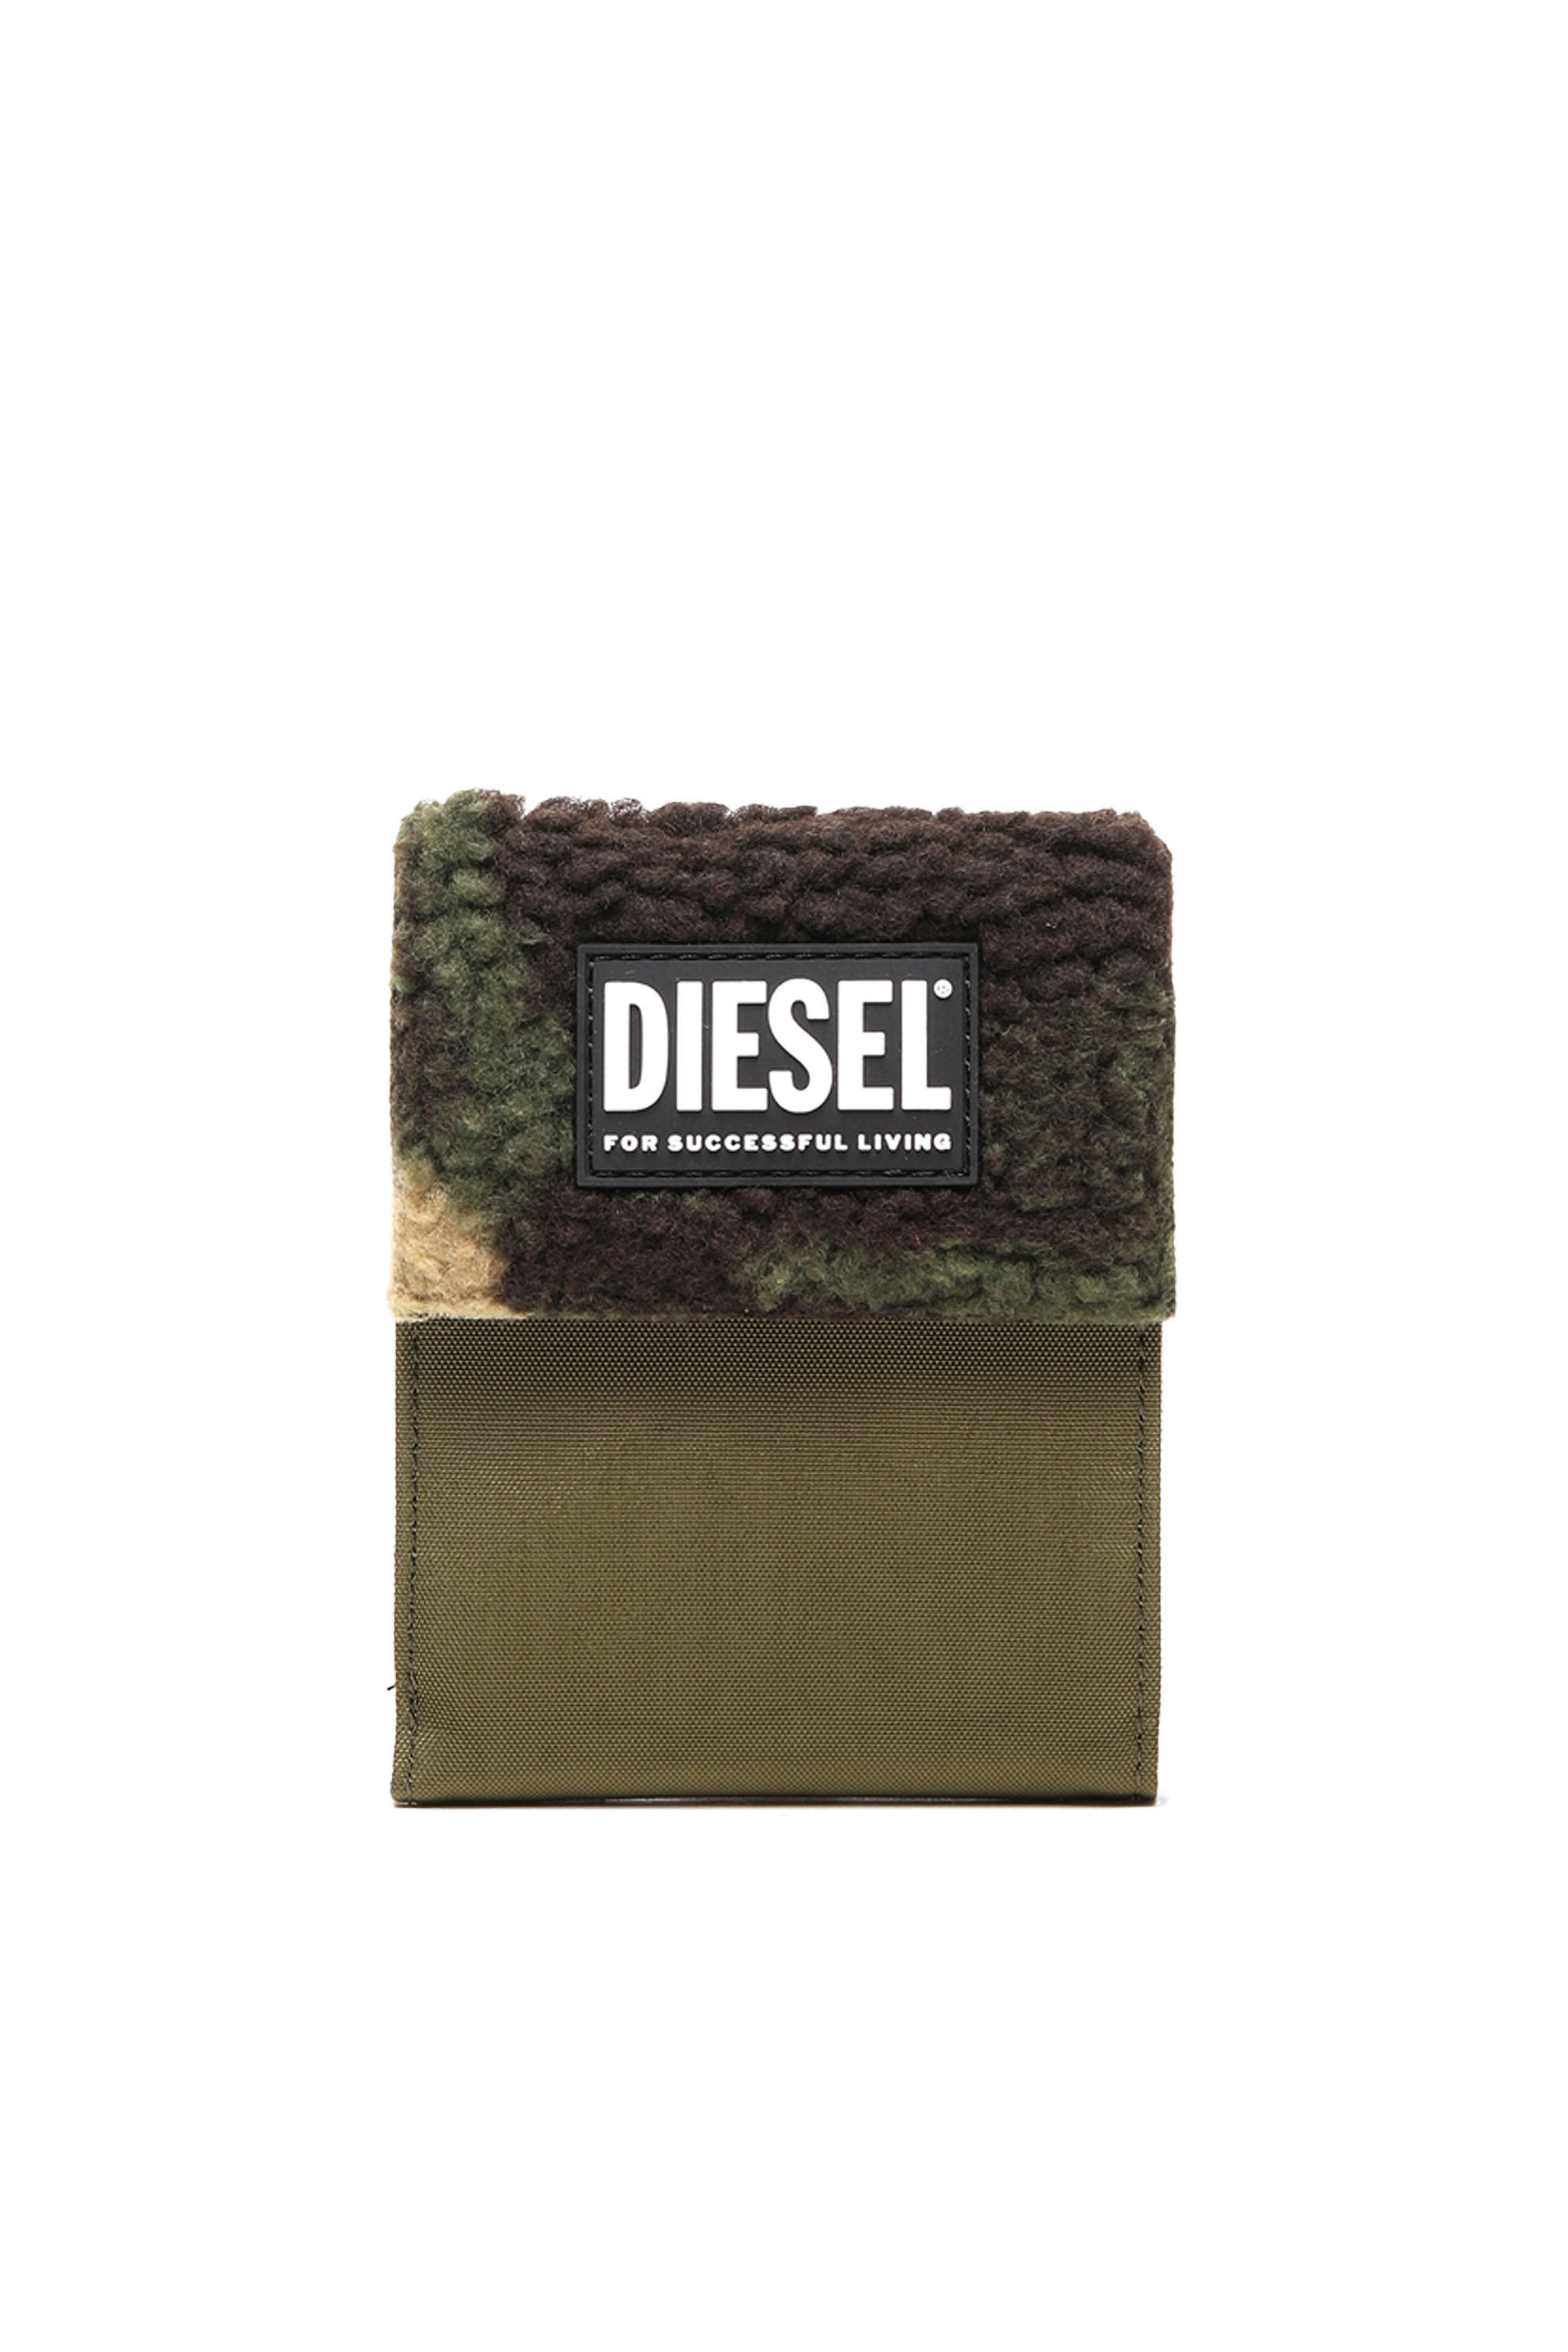 Diesel - HIRESH FD, Military Green - Image 1